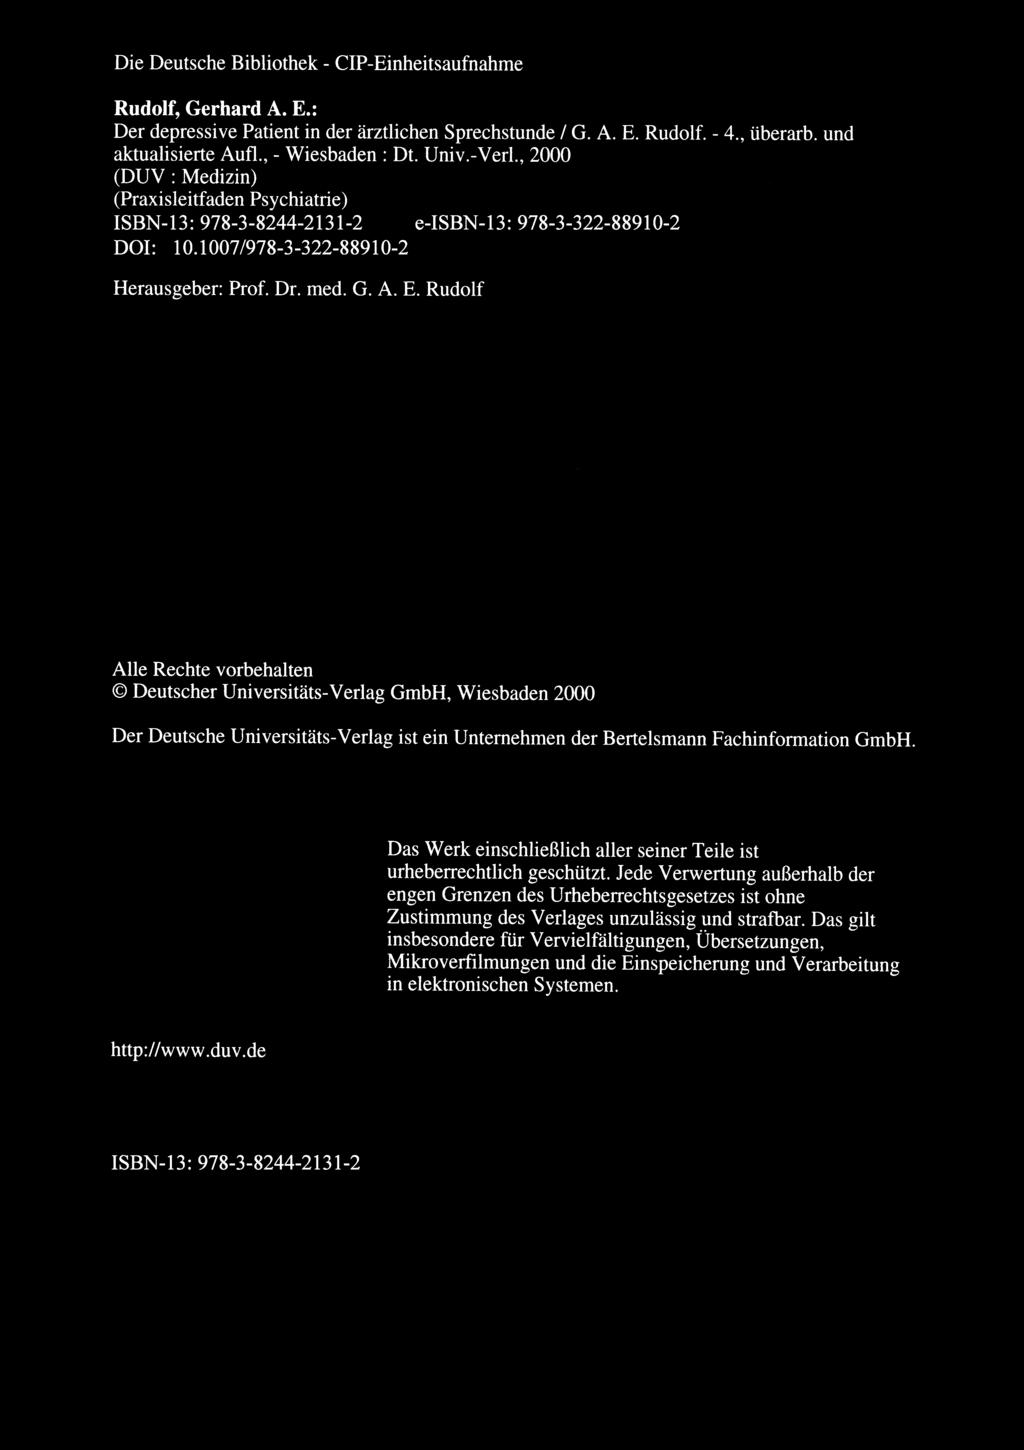 Die Deutsche Bibliothek - CIP-Einheitsaufnahme Rudolf, Gerhard A. E.: Der depressive Patient in der arztlichen Sprechstunde 1 G. A. E. Rudolf. - 4., iiberarb. und aktualisierte Aufl., - Wiesbaden: Dt.